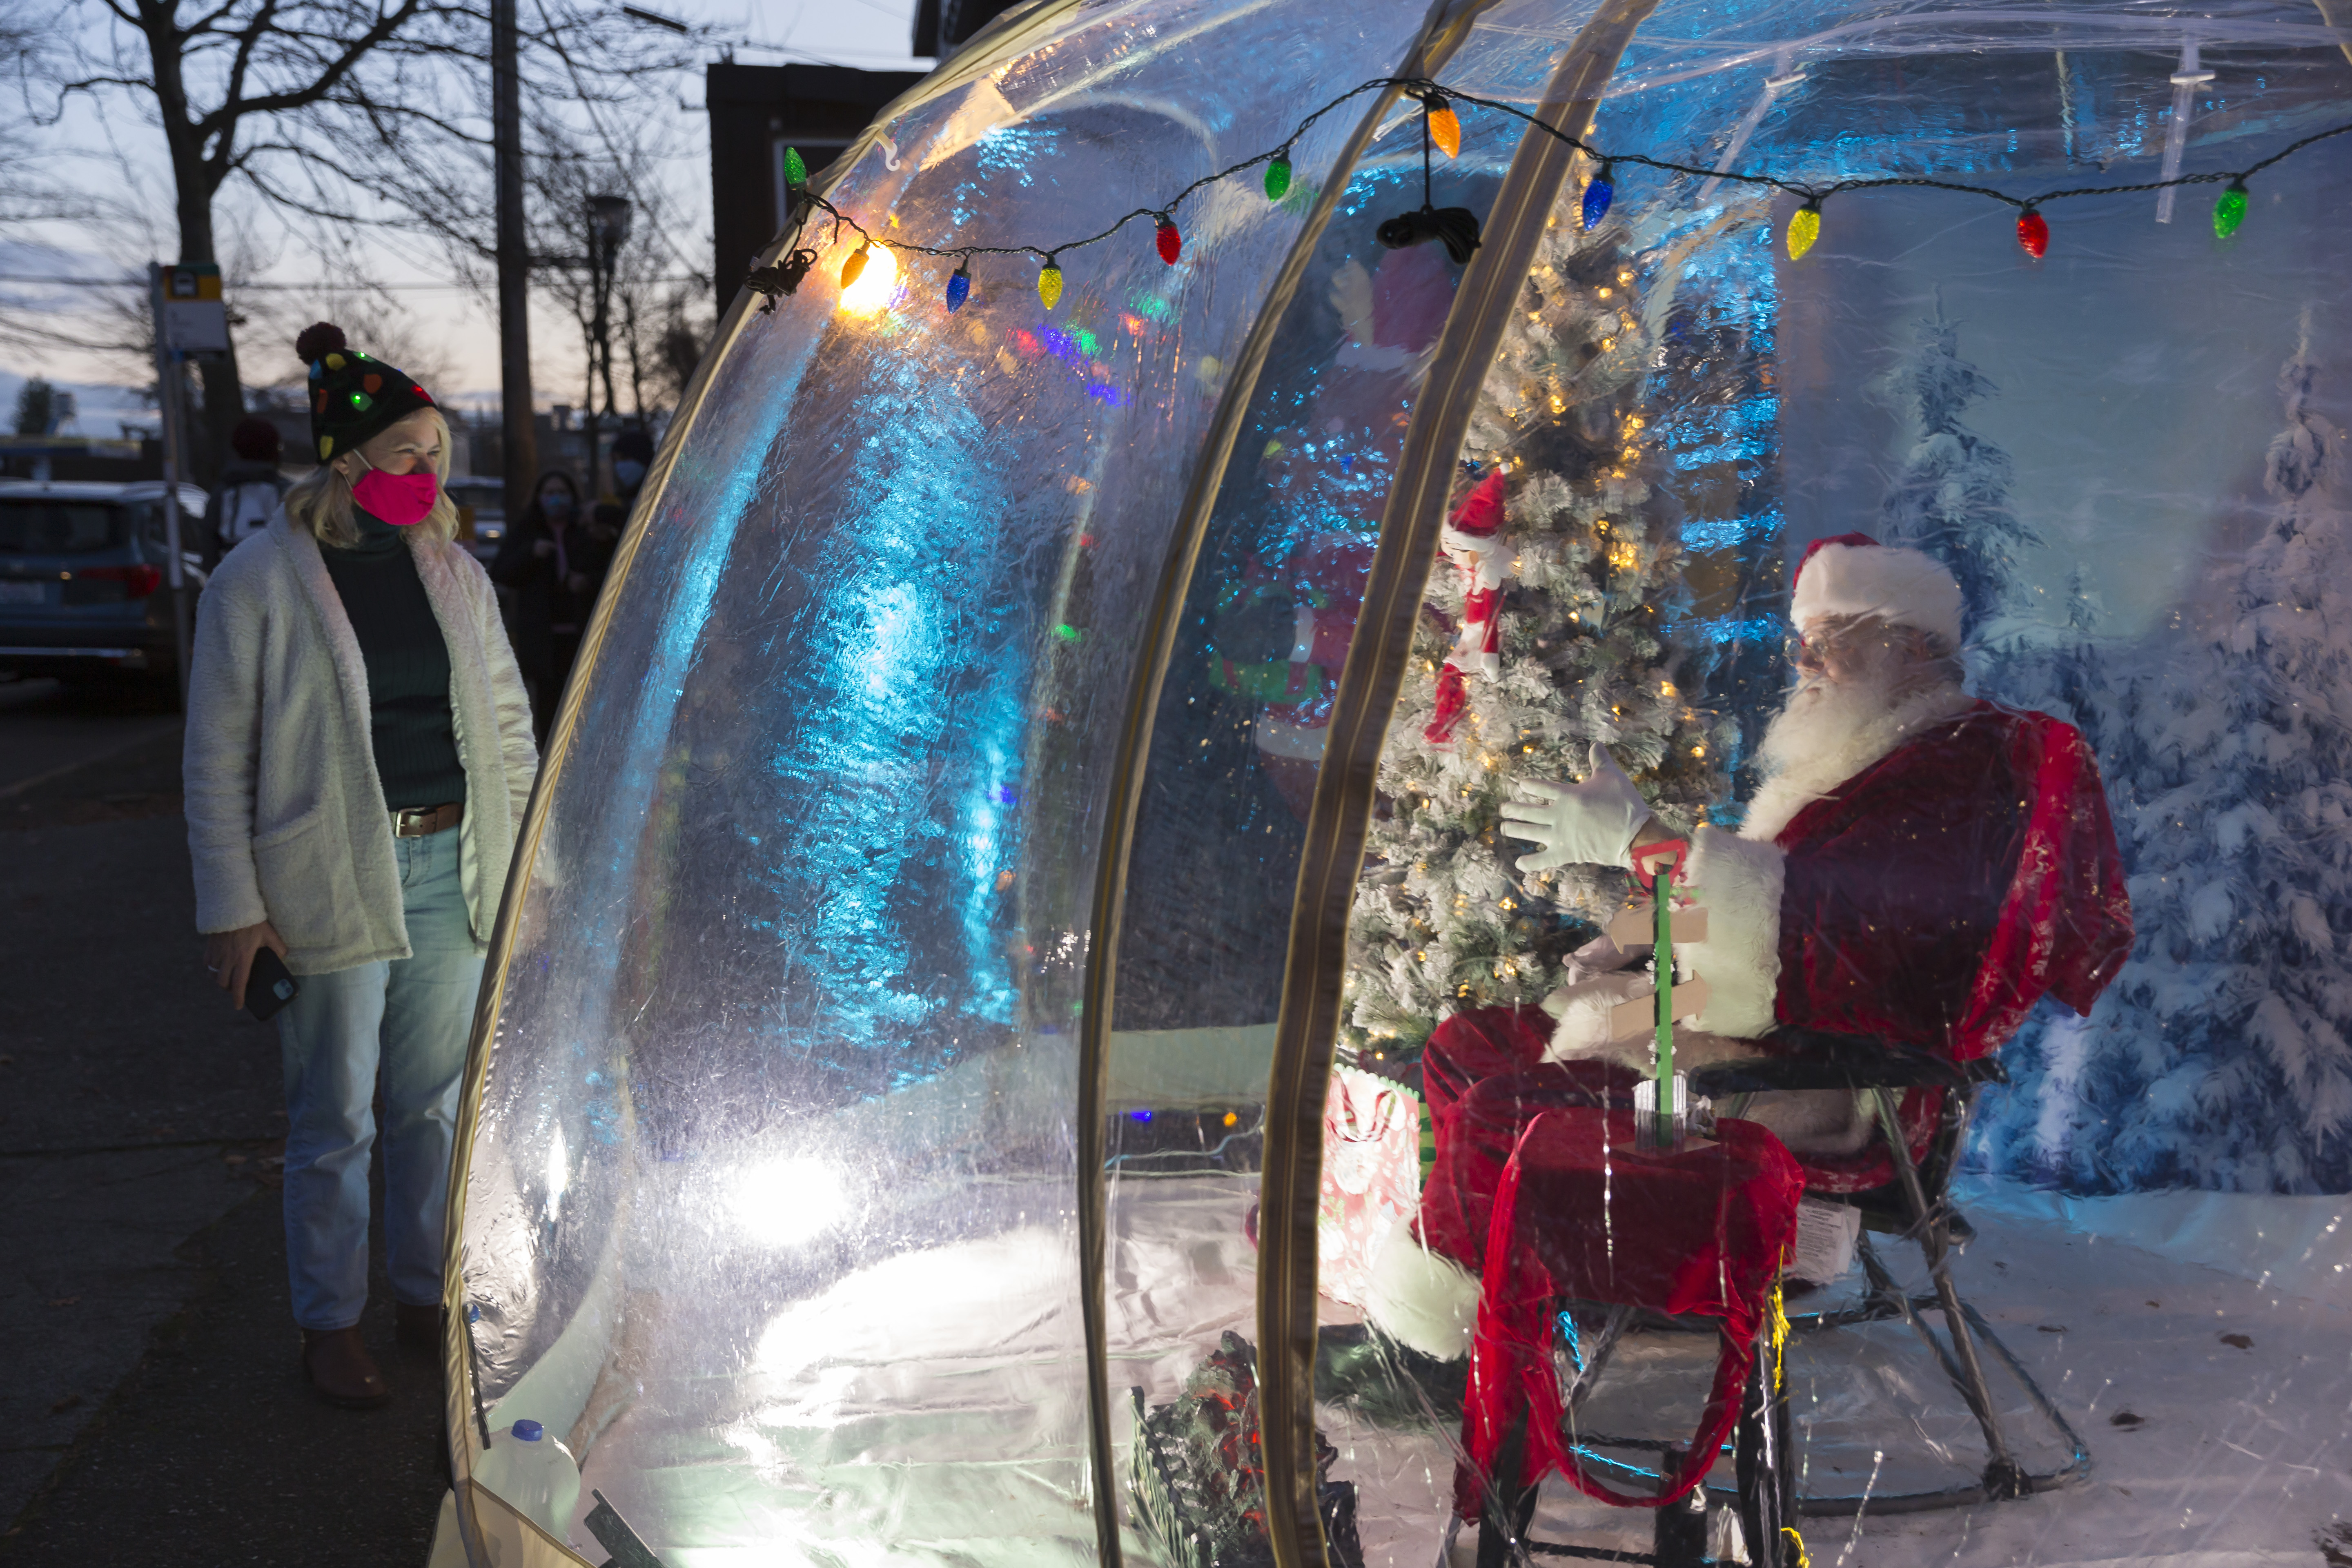 6 декабря 2020 года. Санта-Клаус в Сиэтле (США) принимает посетителей в защитном пластиковом шаре. Фото: ZUMA/TAC 